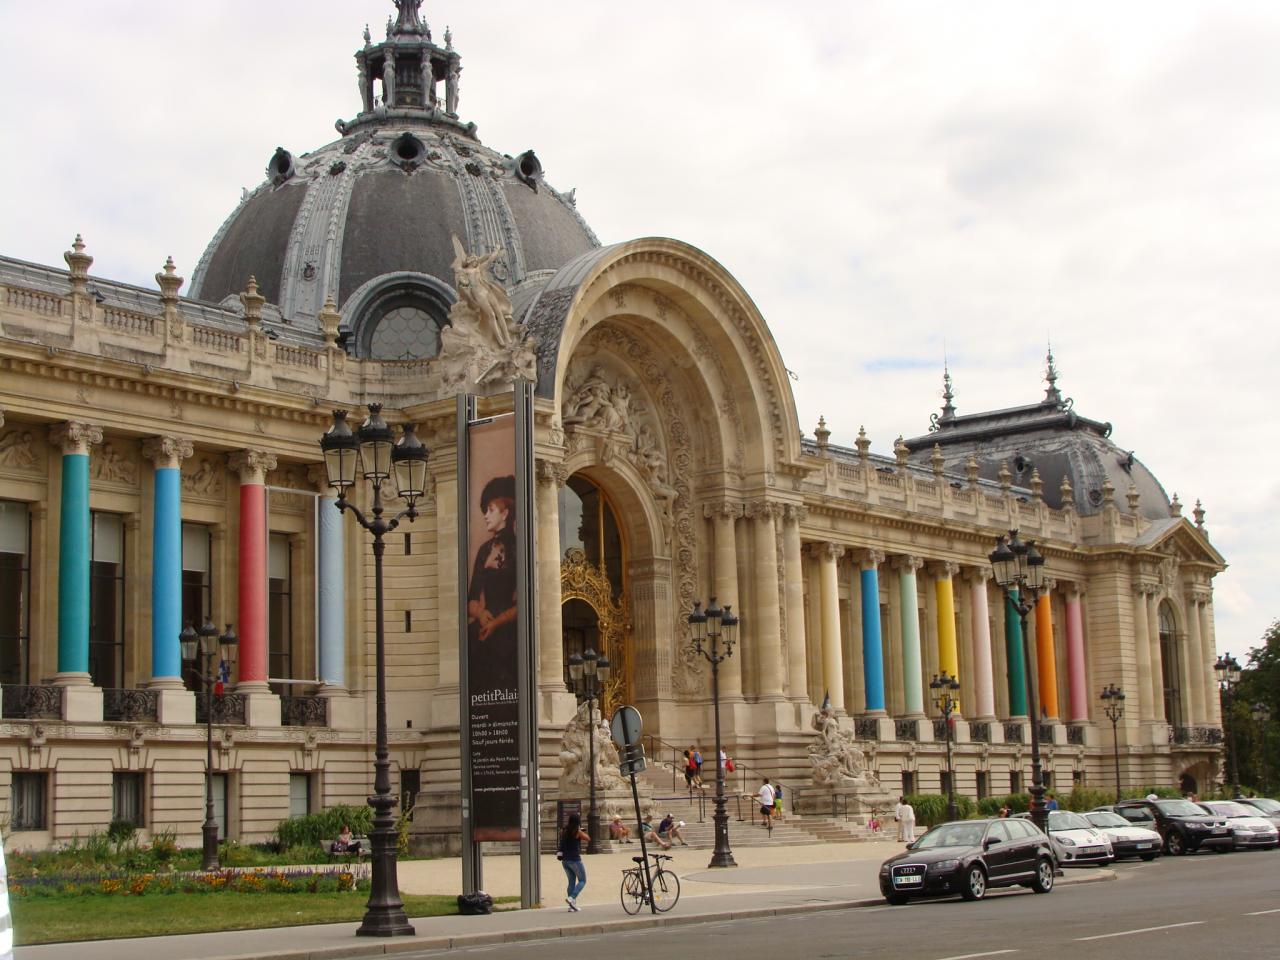 Paris - Petit Palais